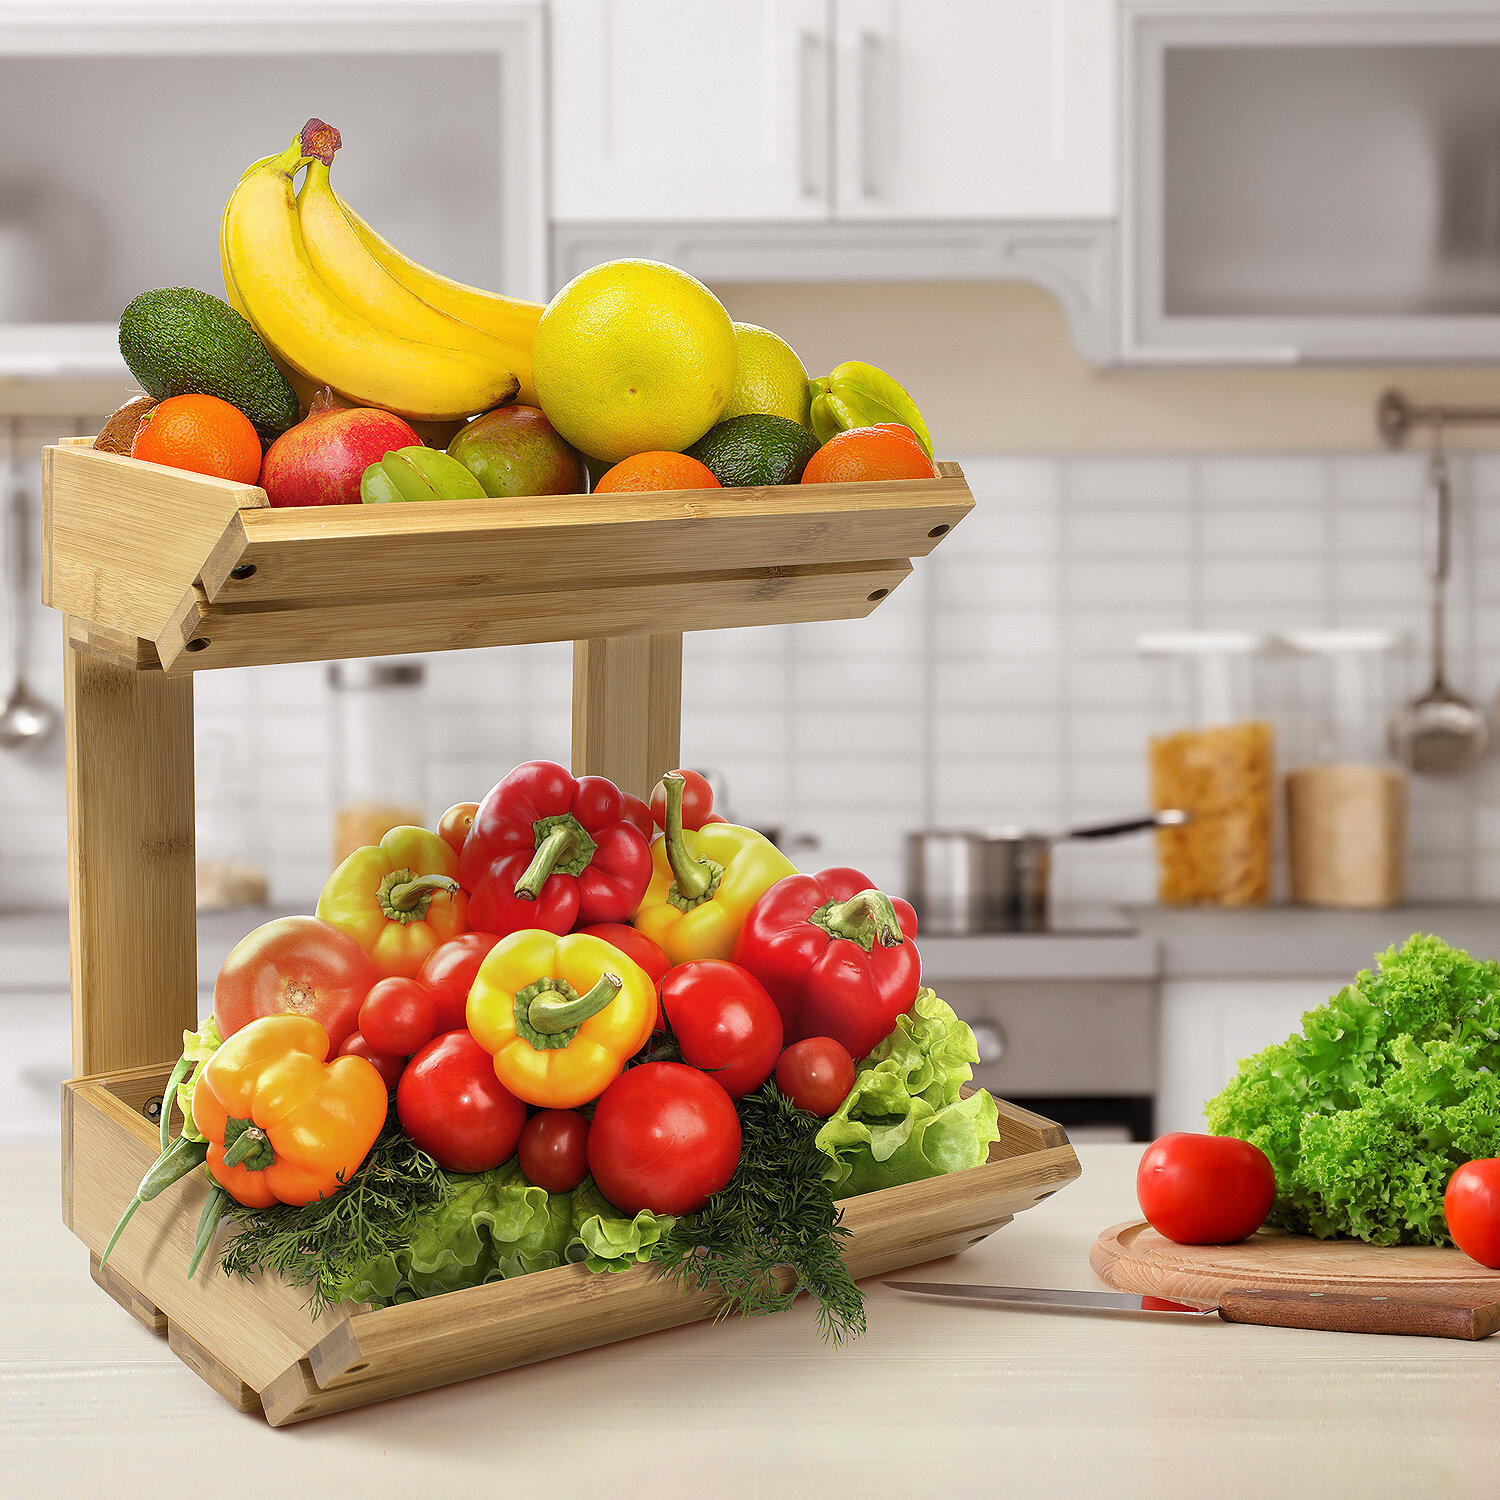 Wood Fruit Vegetable Storage Rack Stand, 4-Tier Storage Organizer